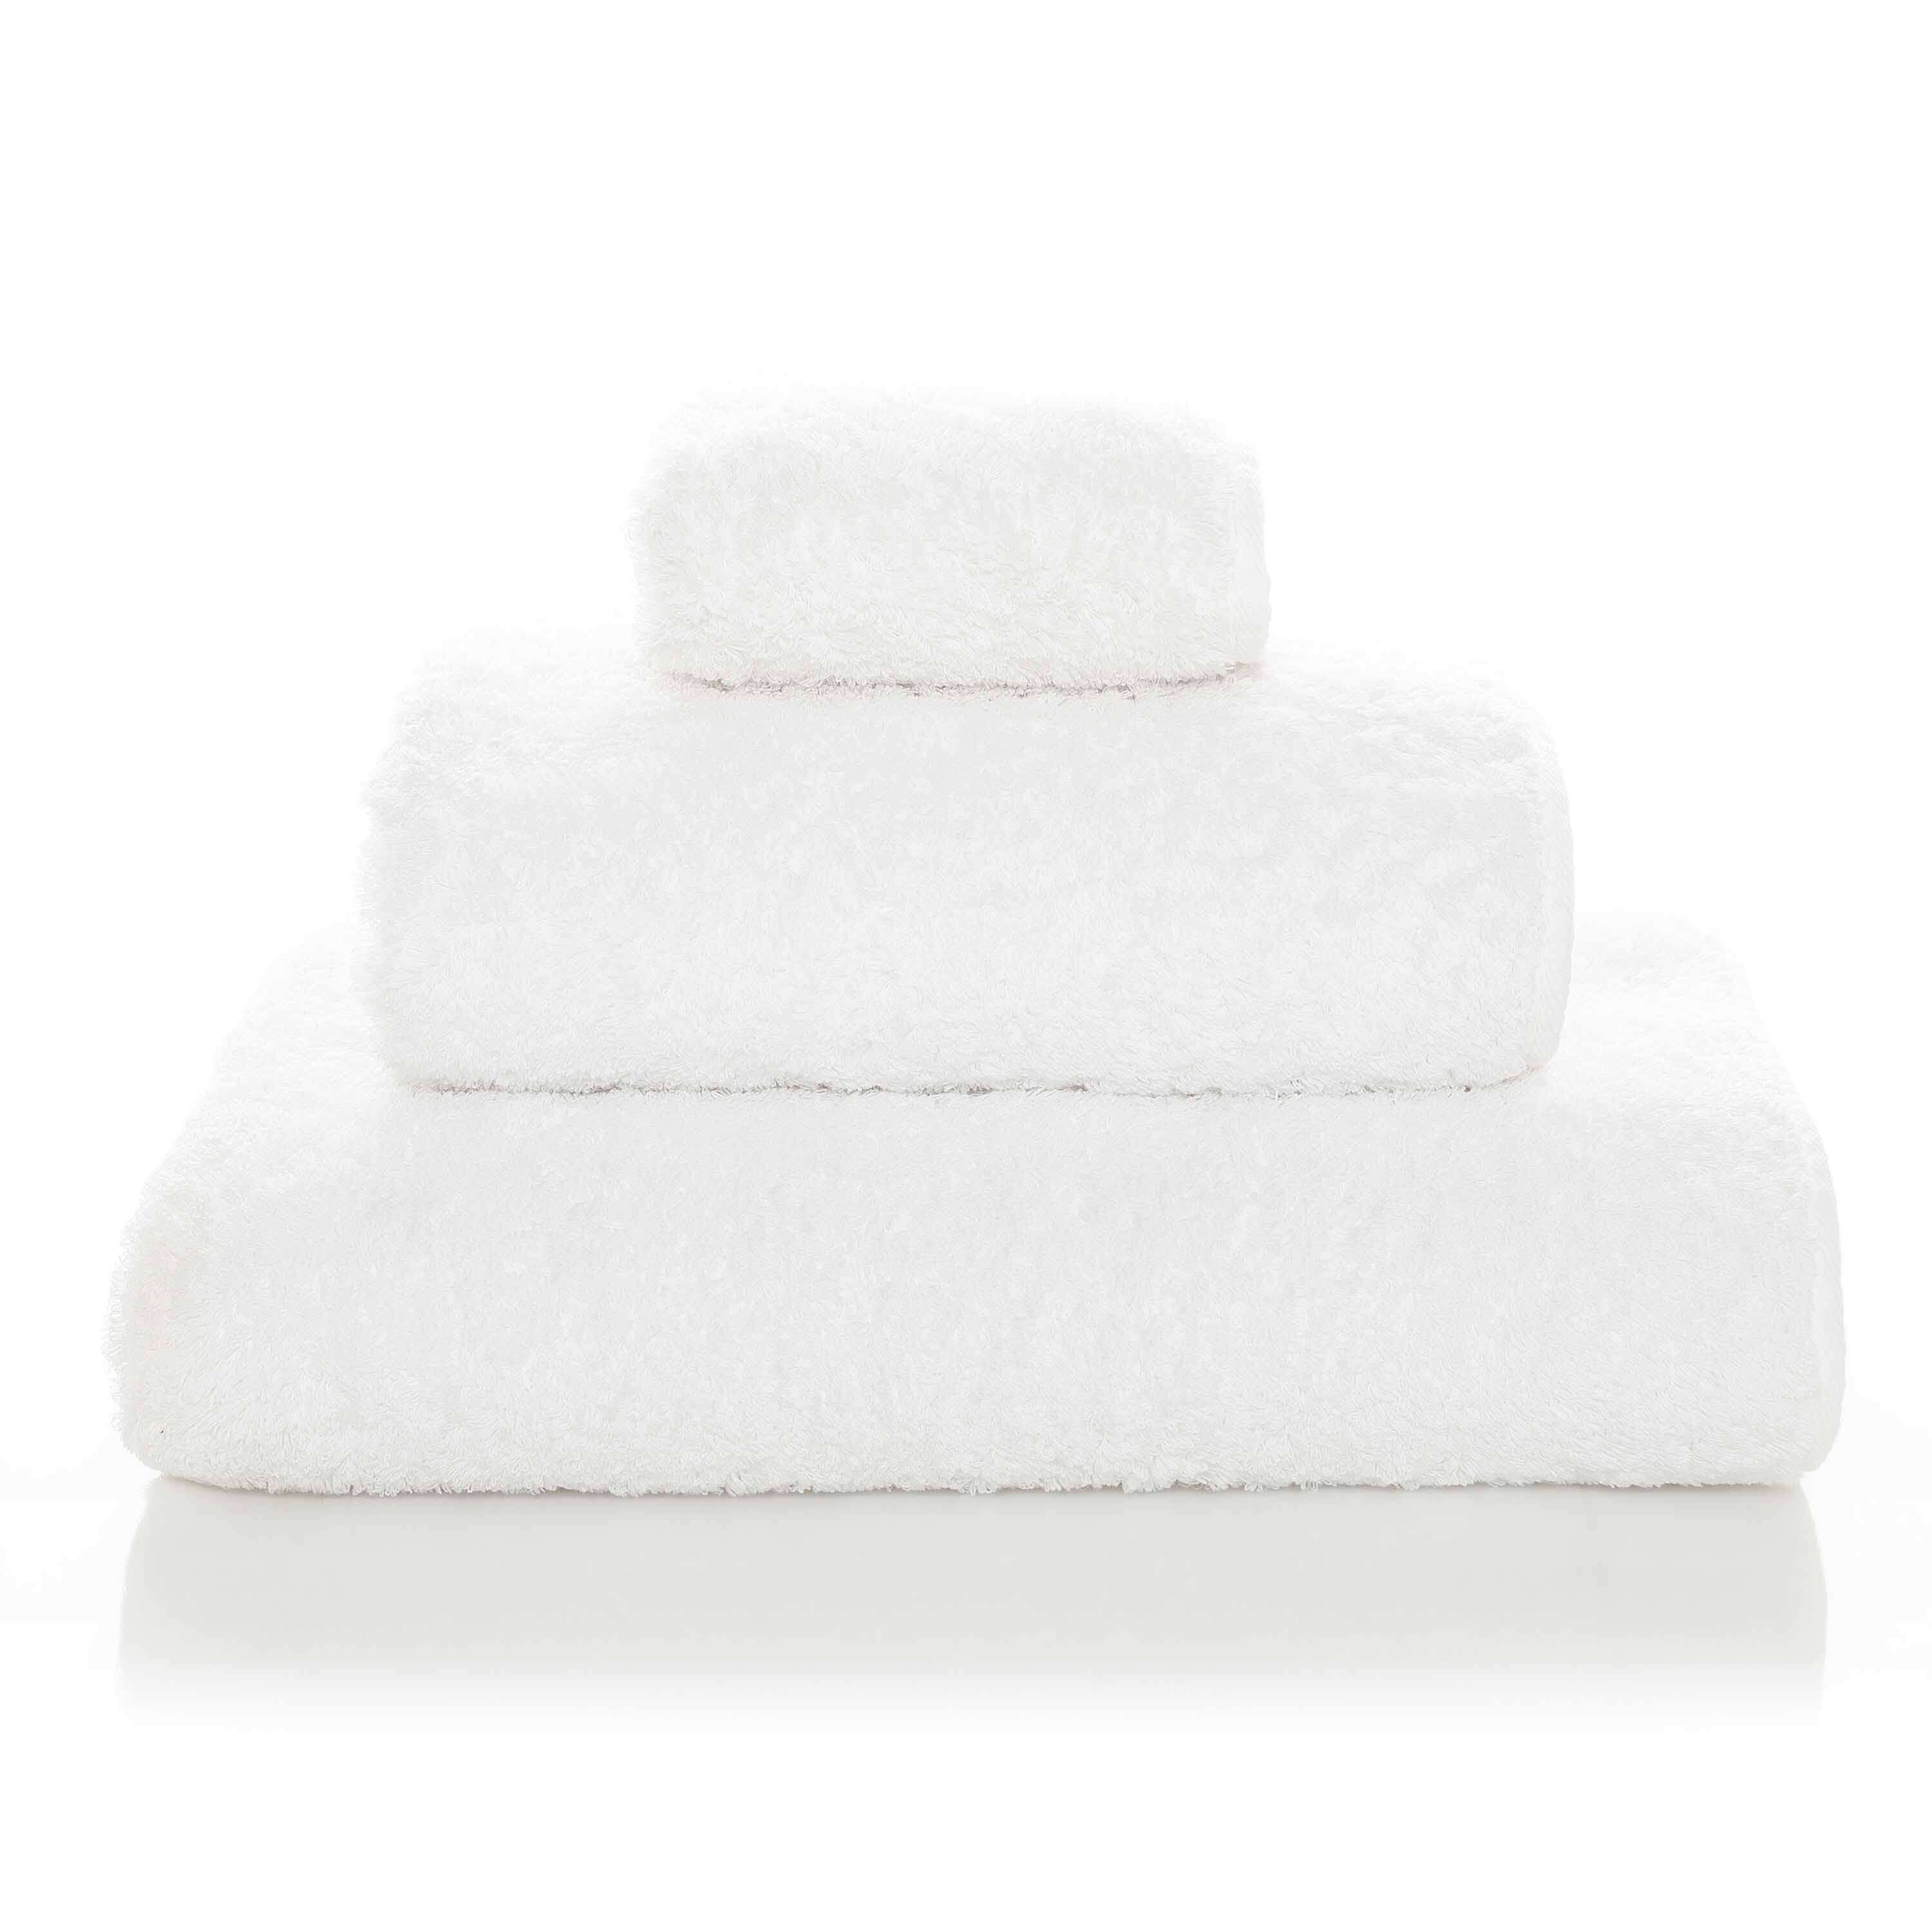 Элитное полотенце Egoist Range White ☞ Размер: 30 x 30 см